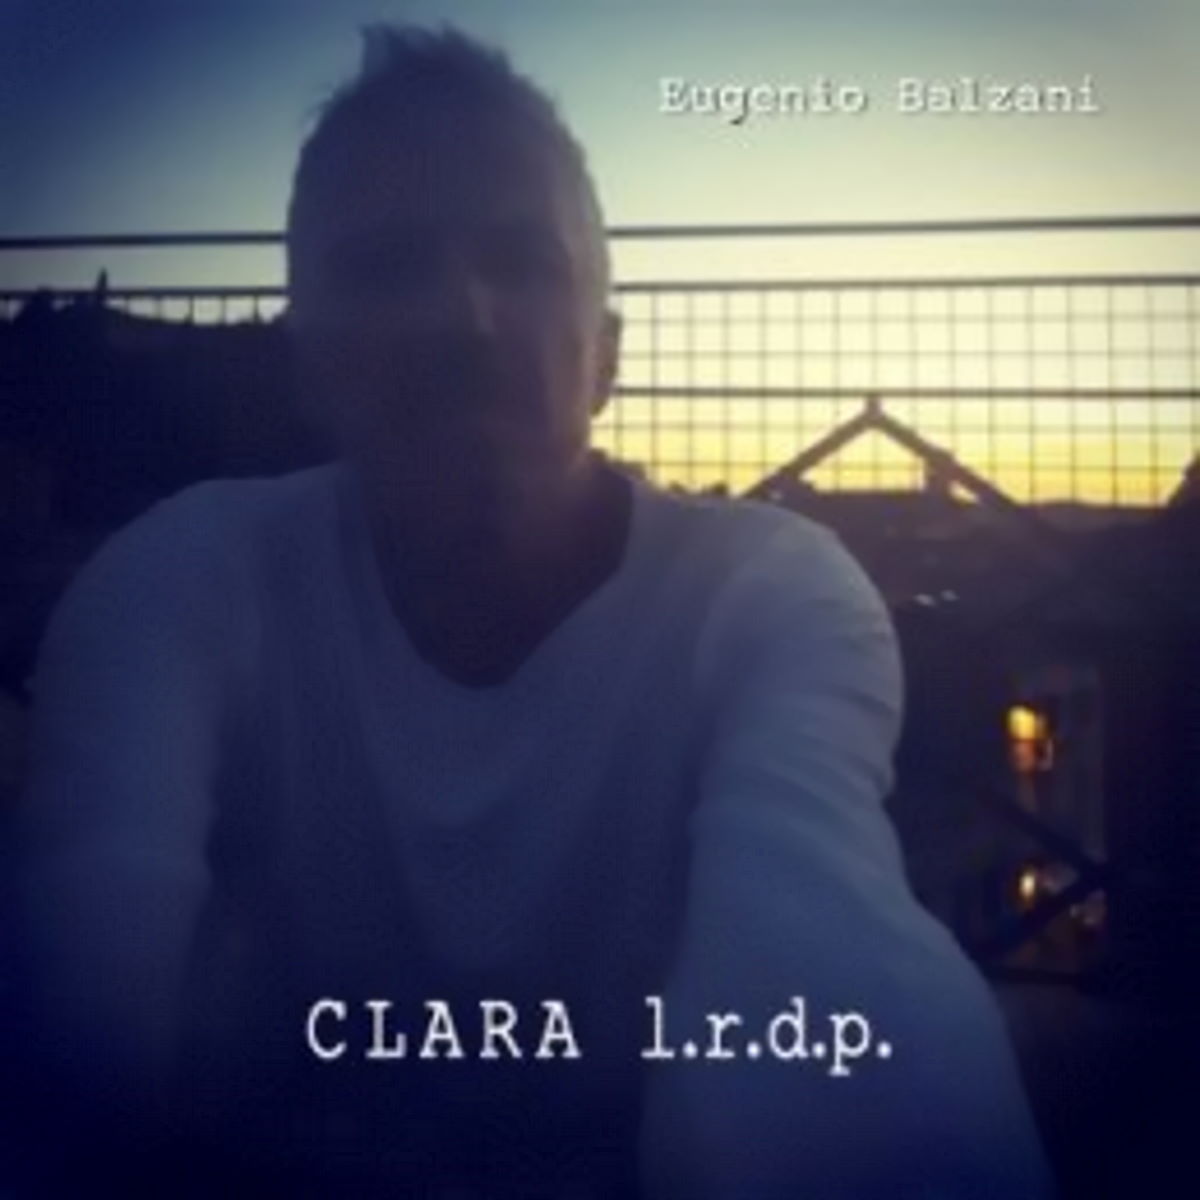 EUGENIO BALZANI, “Clara l.r.d.p.” è l’intensa ballad dedicata alla madre estratta dal nuovo album del cantautore